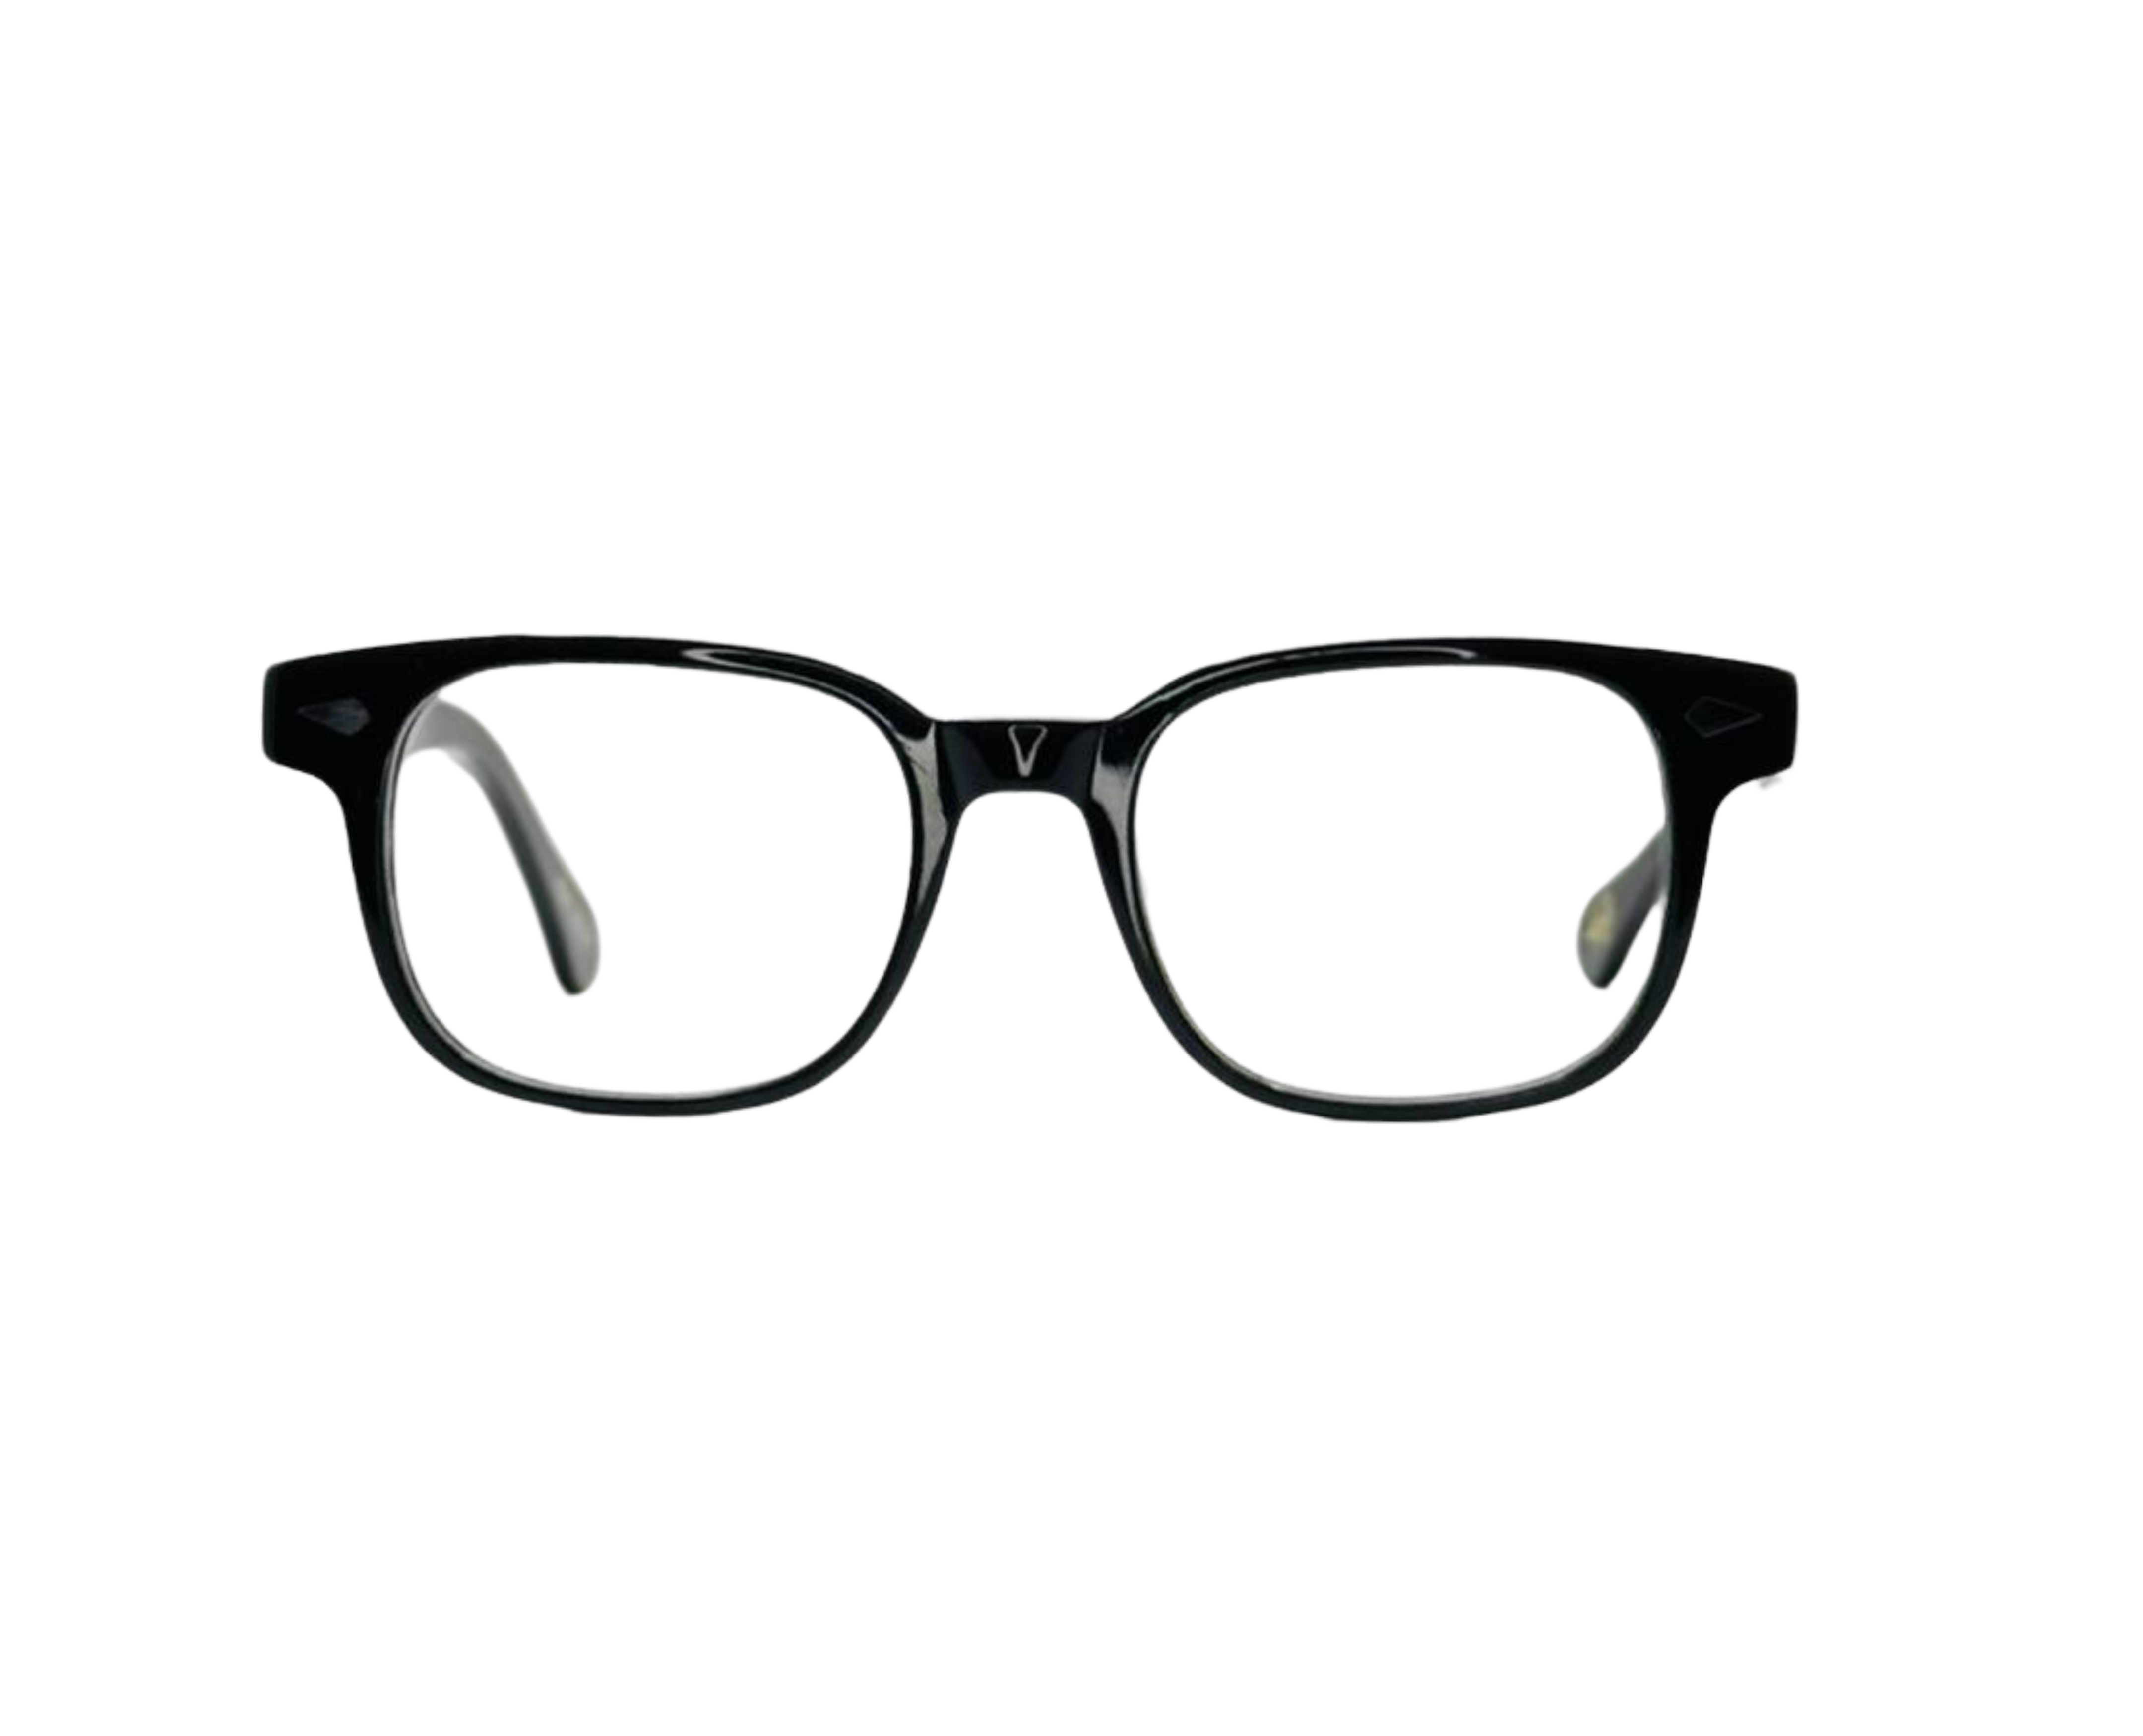 NS Luxury - J16 - Black - Eyeglasses